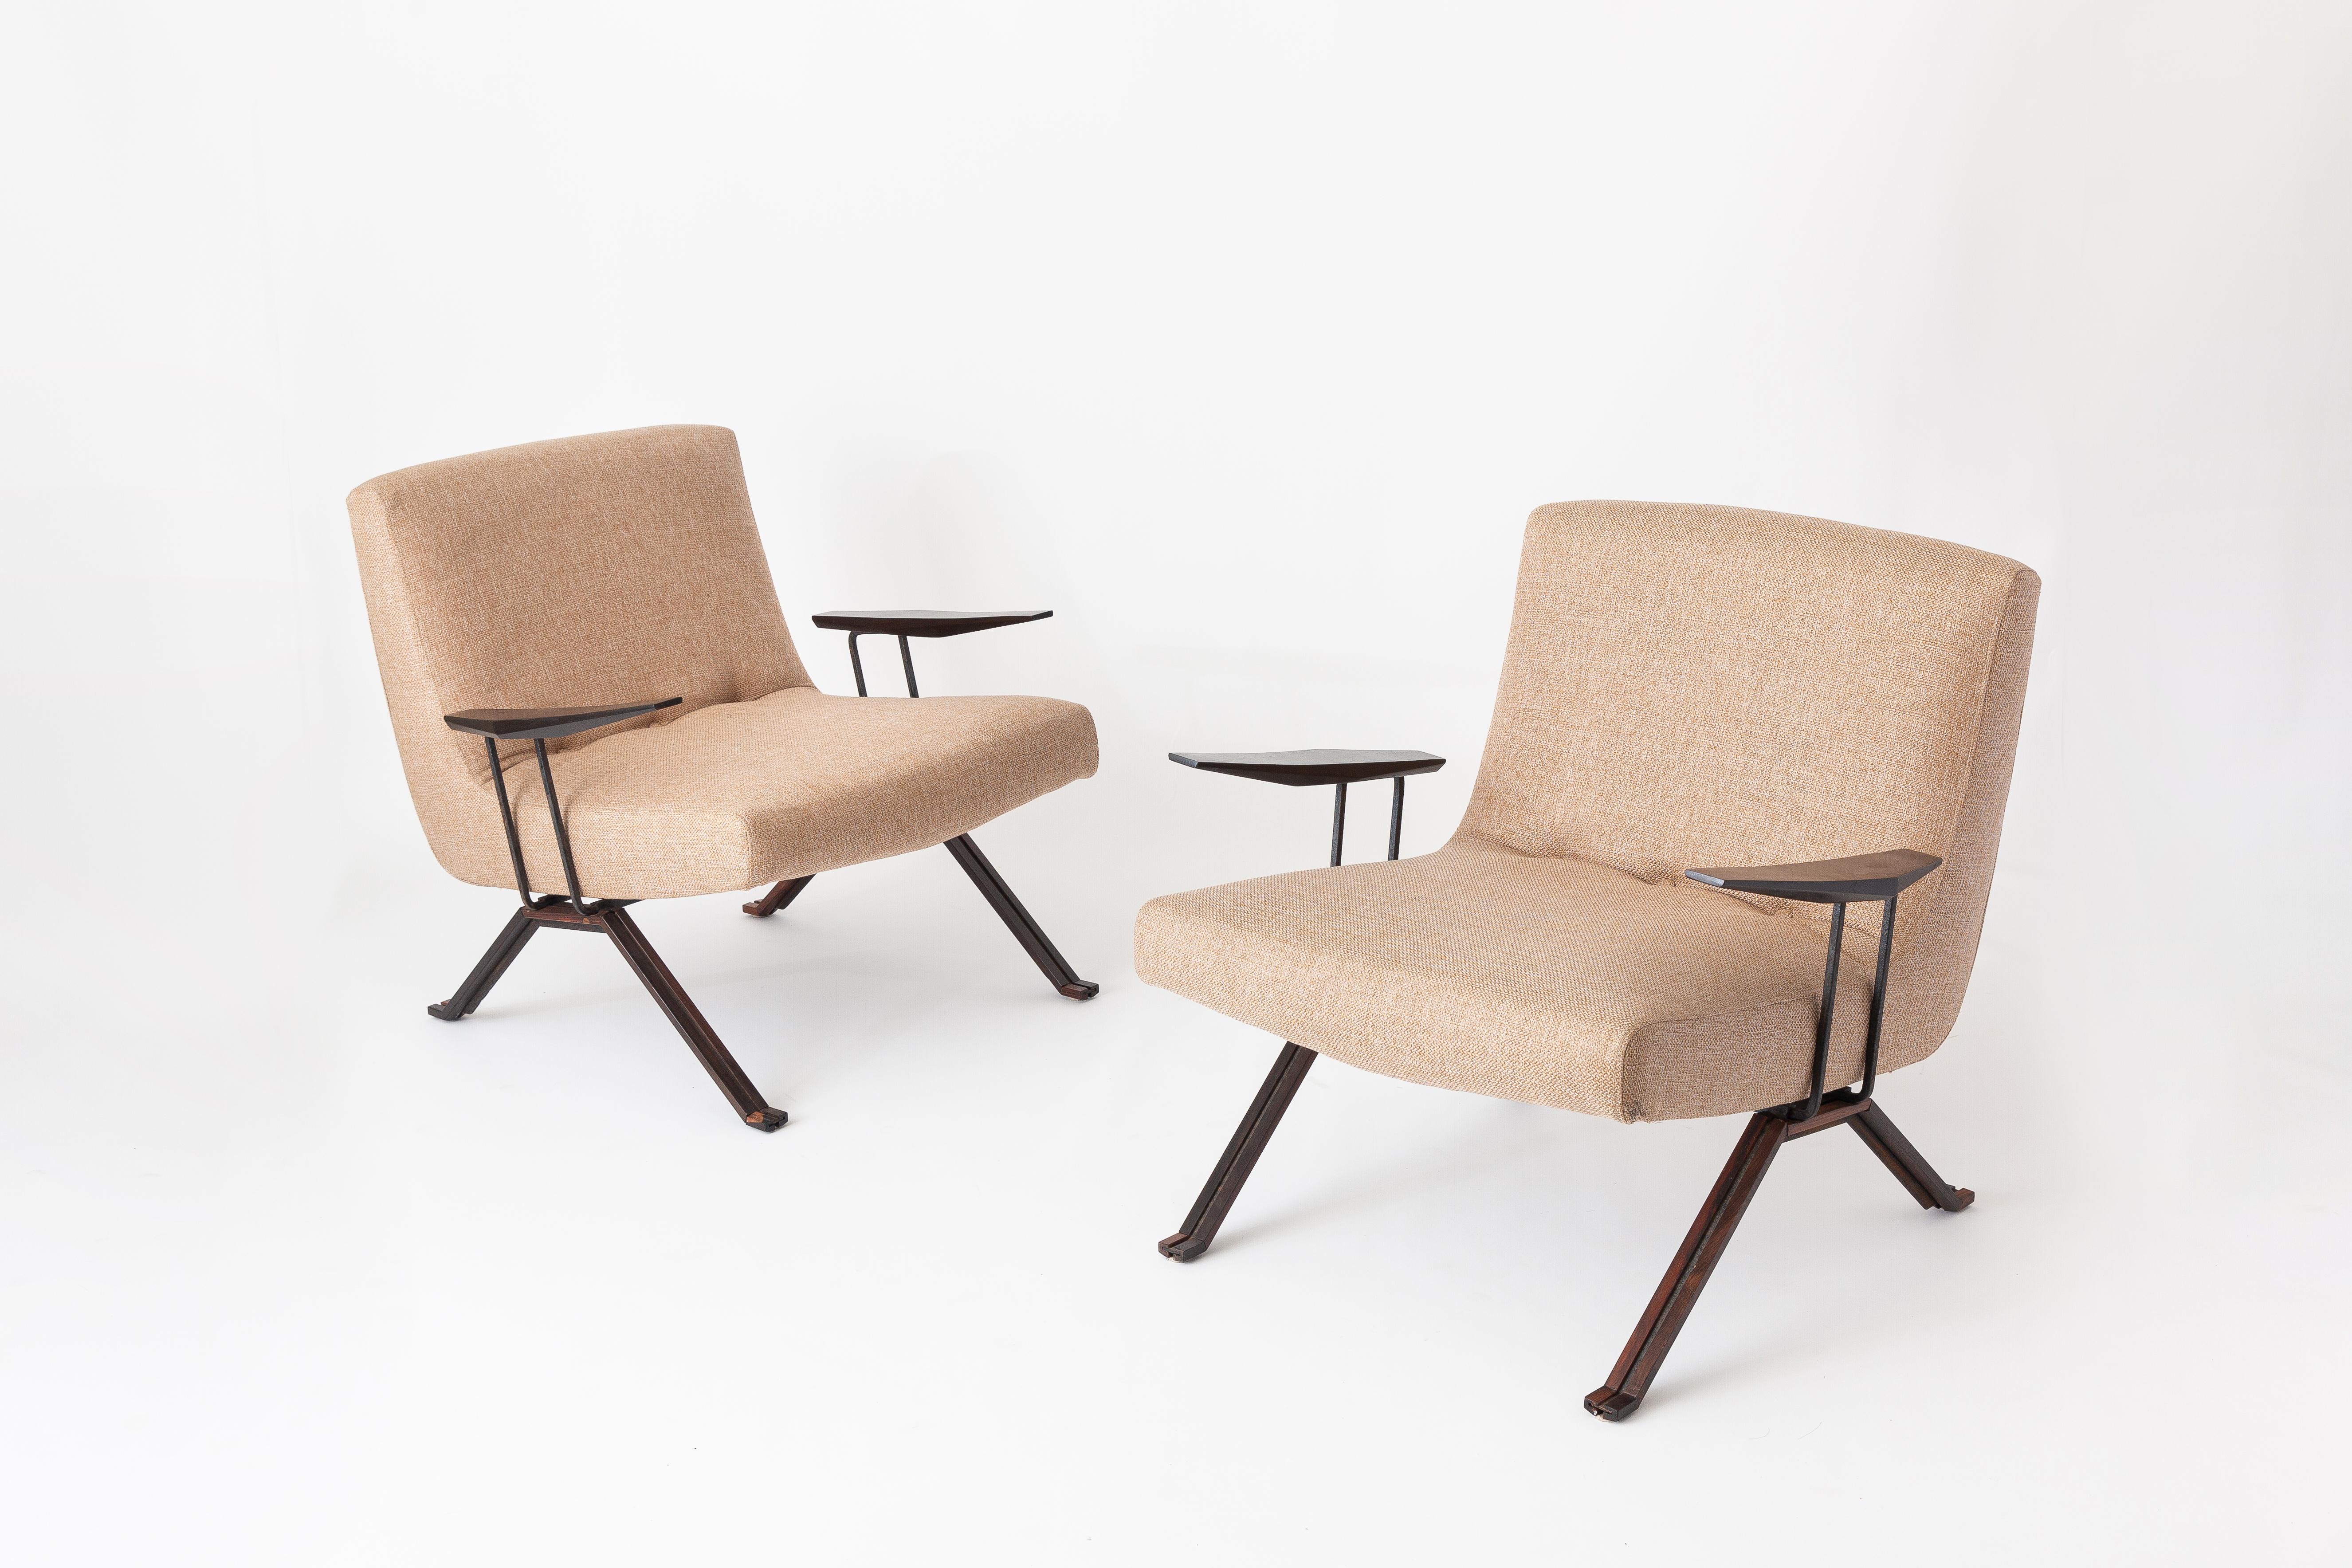 Der MP-01 ist das erste Sesselmodell, das der weltberühmte Percival Lafer herstellte, und legte den Grundstein für seinen einzigartigen Stil und seine nachfolgenden Designs. Die sinnlichen Kurven des Sitzes werden durch die elegant geformten